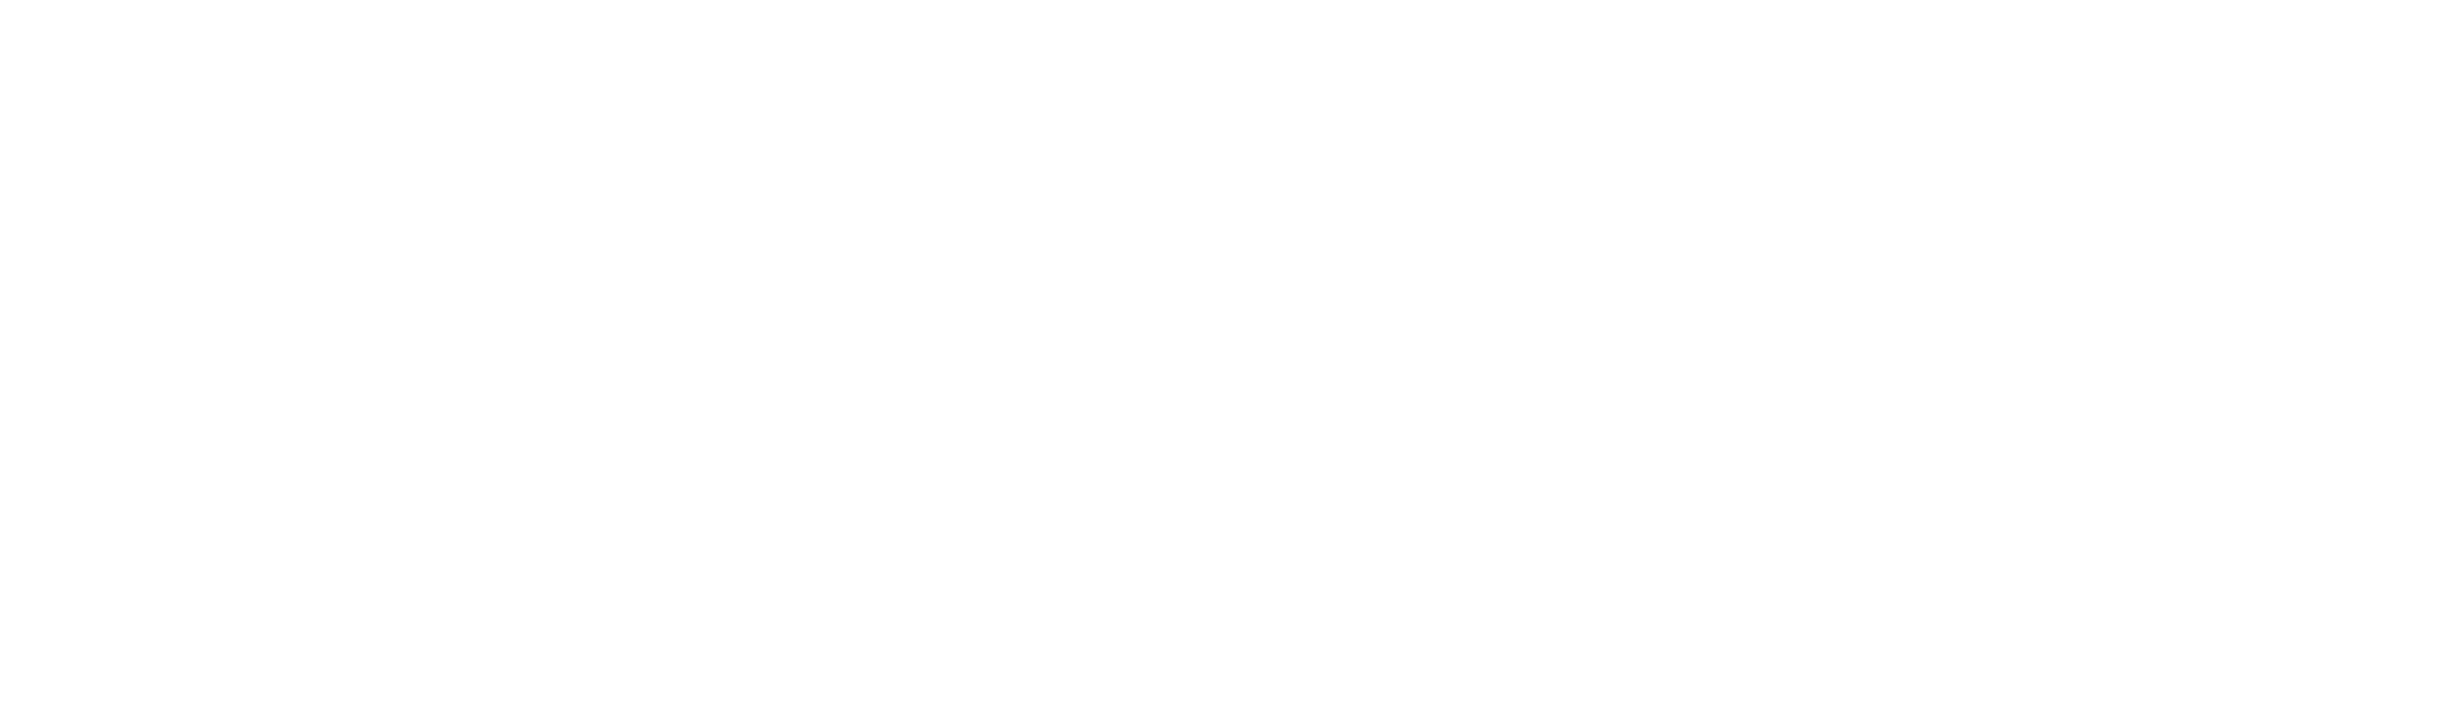 SpeedPro logo white